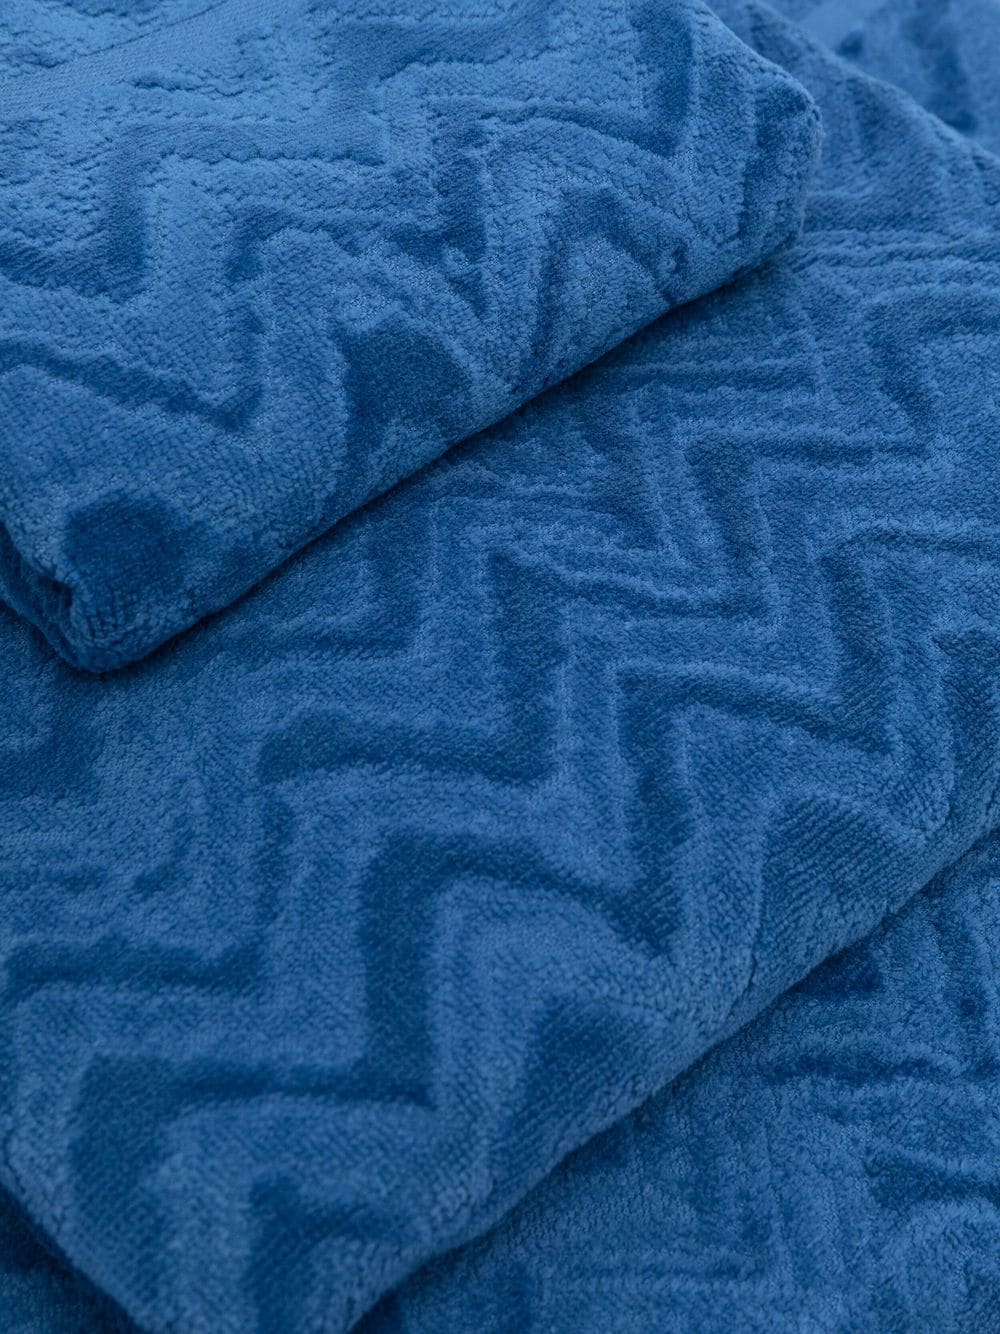 Missoni Home Handdoek met zigzag patroon - Blauw